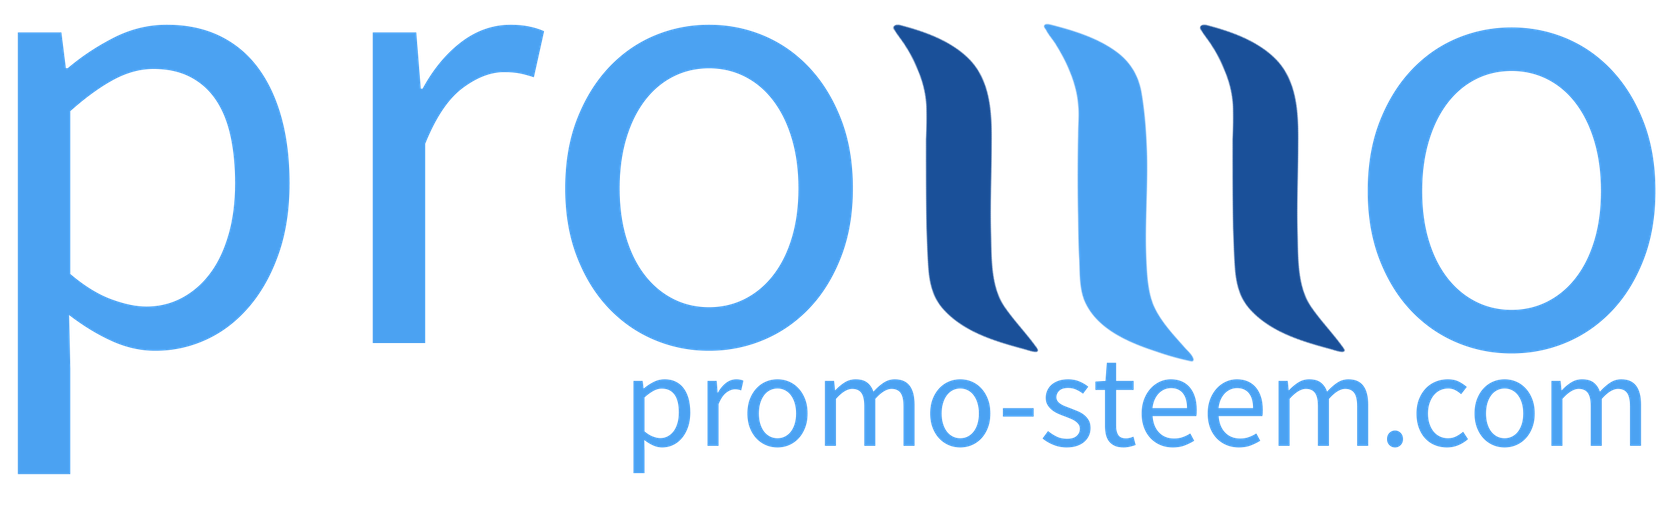 promo-steem logo - Steem Autonomous Decentralized Marketing Department - Blockchain - Steemit.png